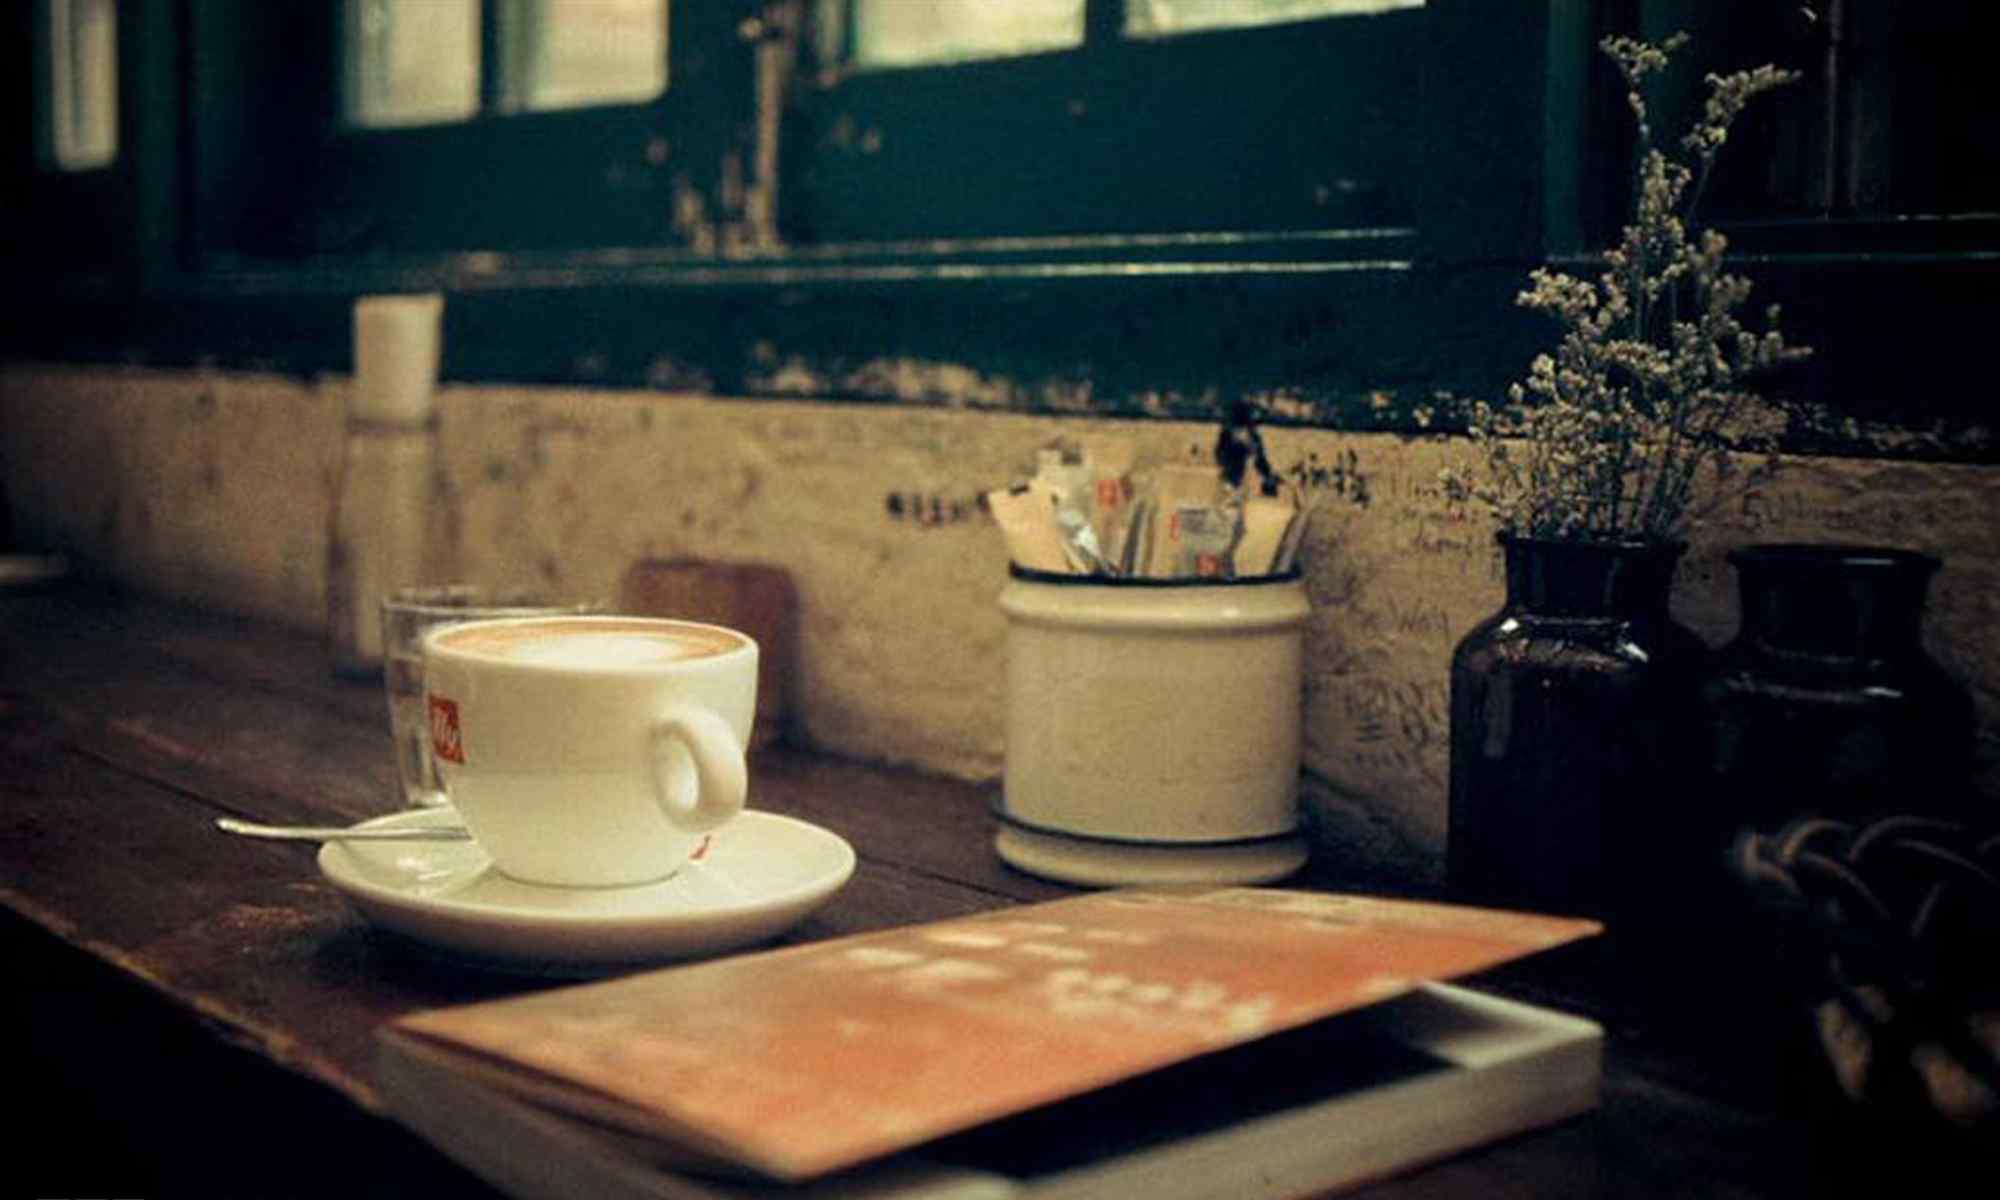  咖啡书本文艺清新摄影桌面壁纸